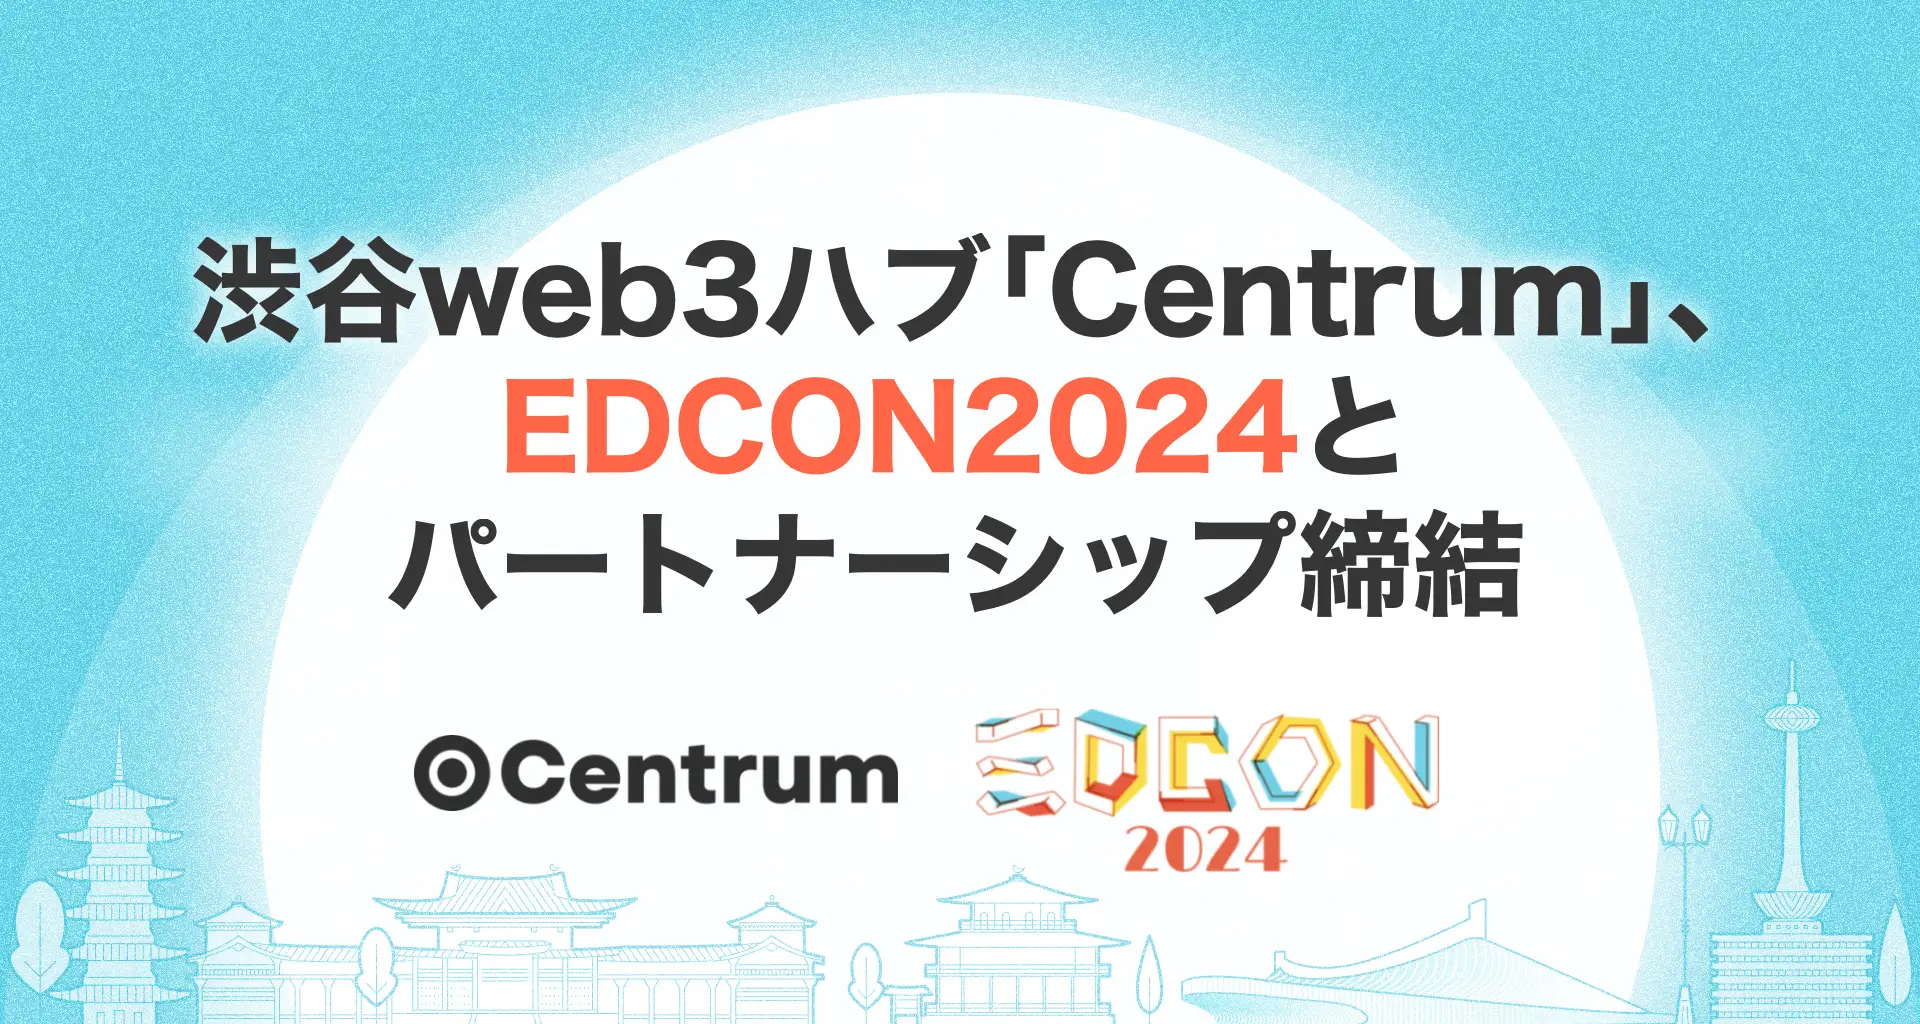 渋谷web3ハブ「Centrum」、EDCON2024とパートナーシップ締結